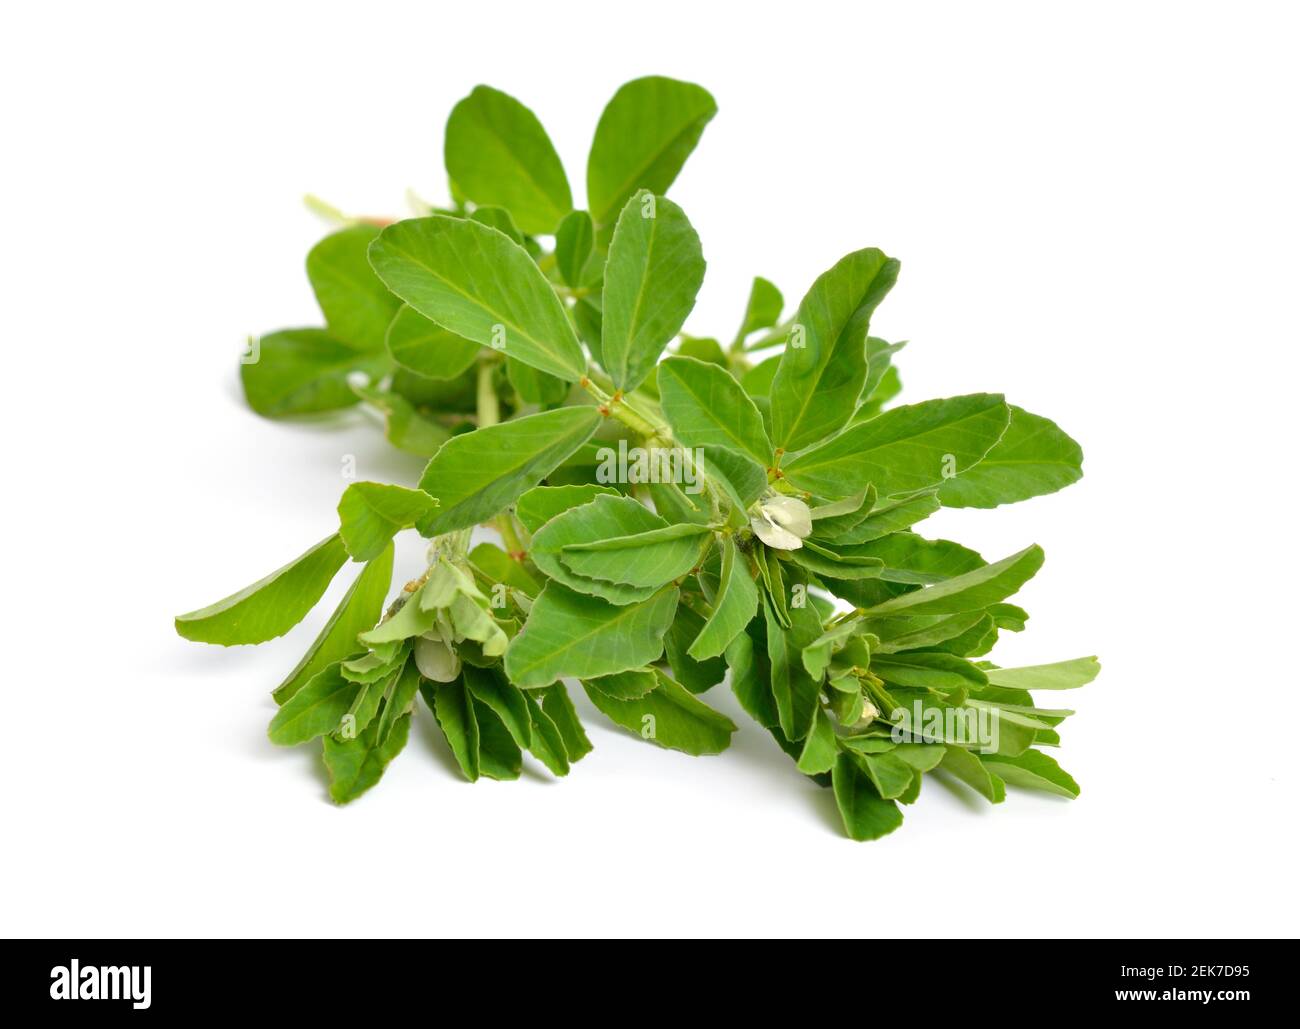 Bockshornklee oder Trigonella foenum-graecum. Grüne Pflanze. Isoliert auf weißem Hintergrund Stockfoto